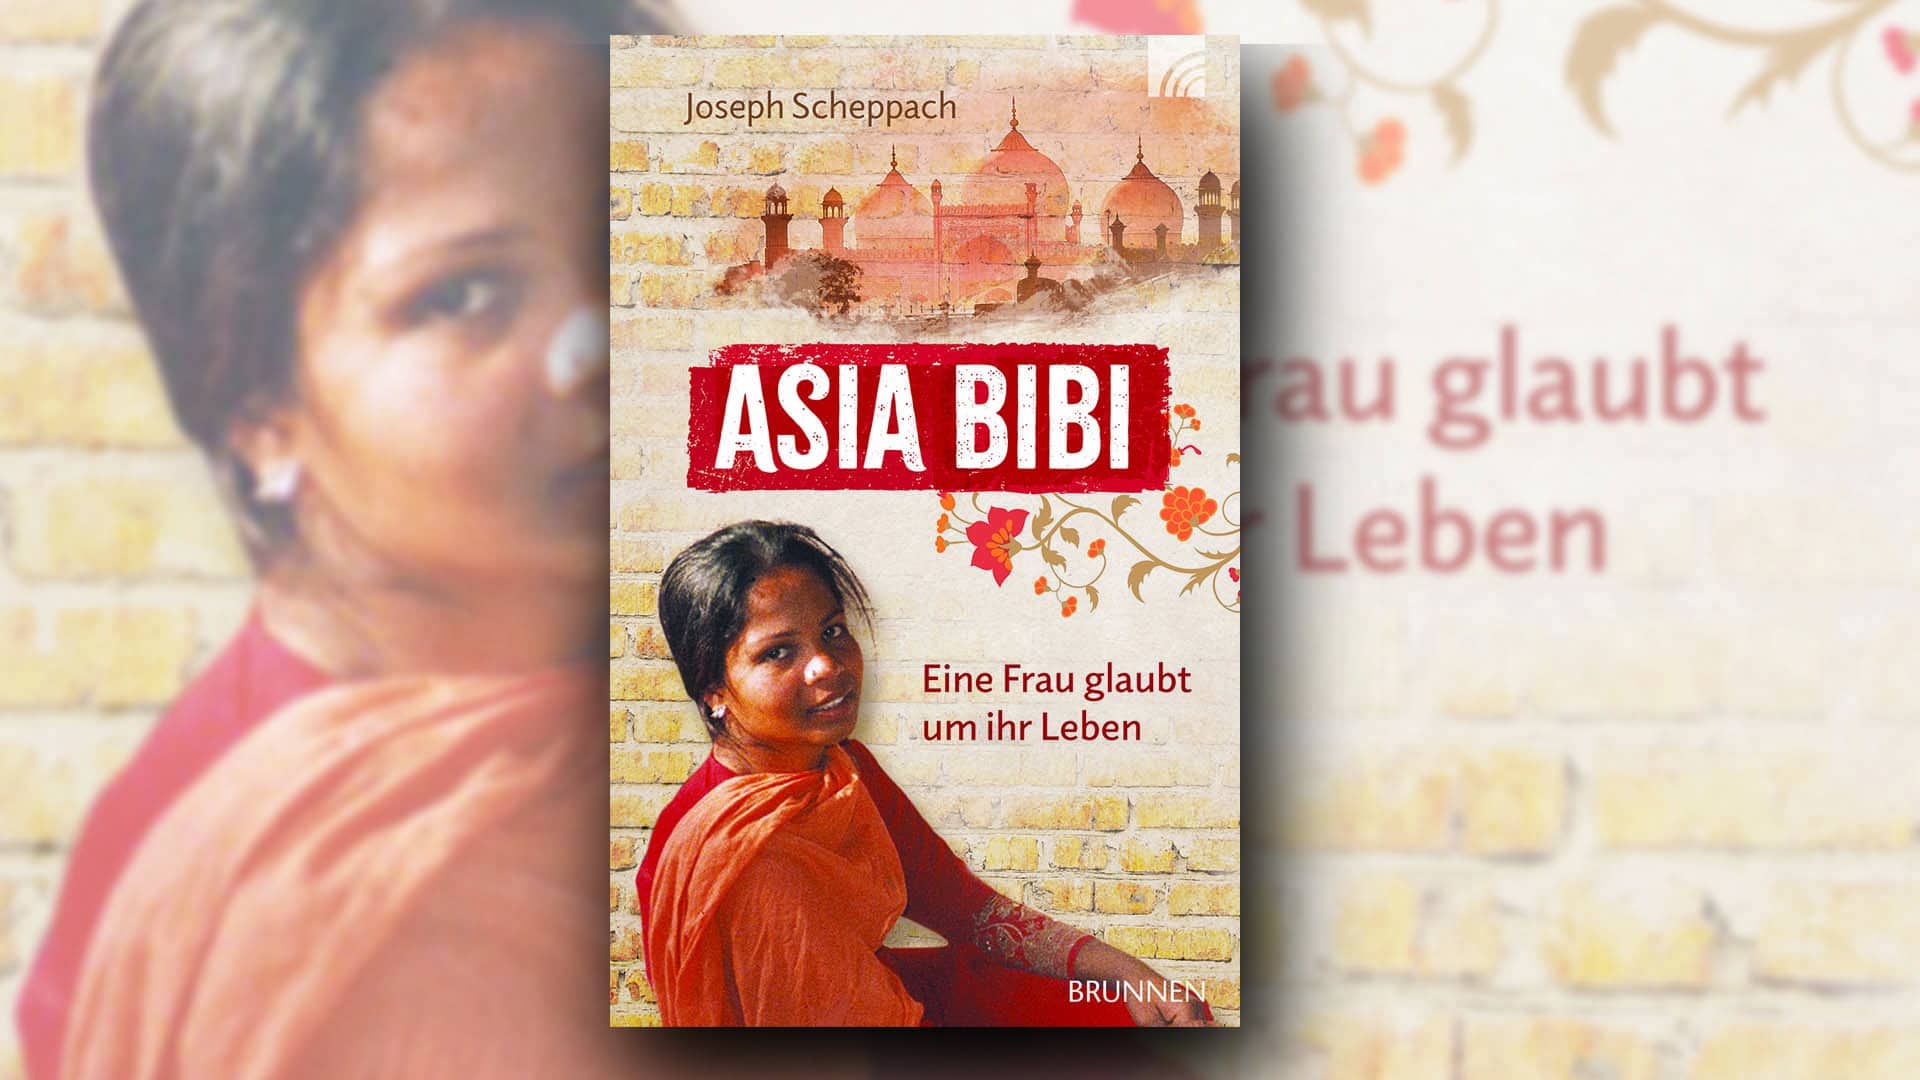 Den erschütternden Fall der inhaftierten pakistanischen Christin Asia Bibi und wie sie schließlich frei kam, beschreibt der Journalist Joseph Scheppach in seinem lesenswerten Buch „Asia Bibi. Eine Frau glaubt um ihr Leben“